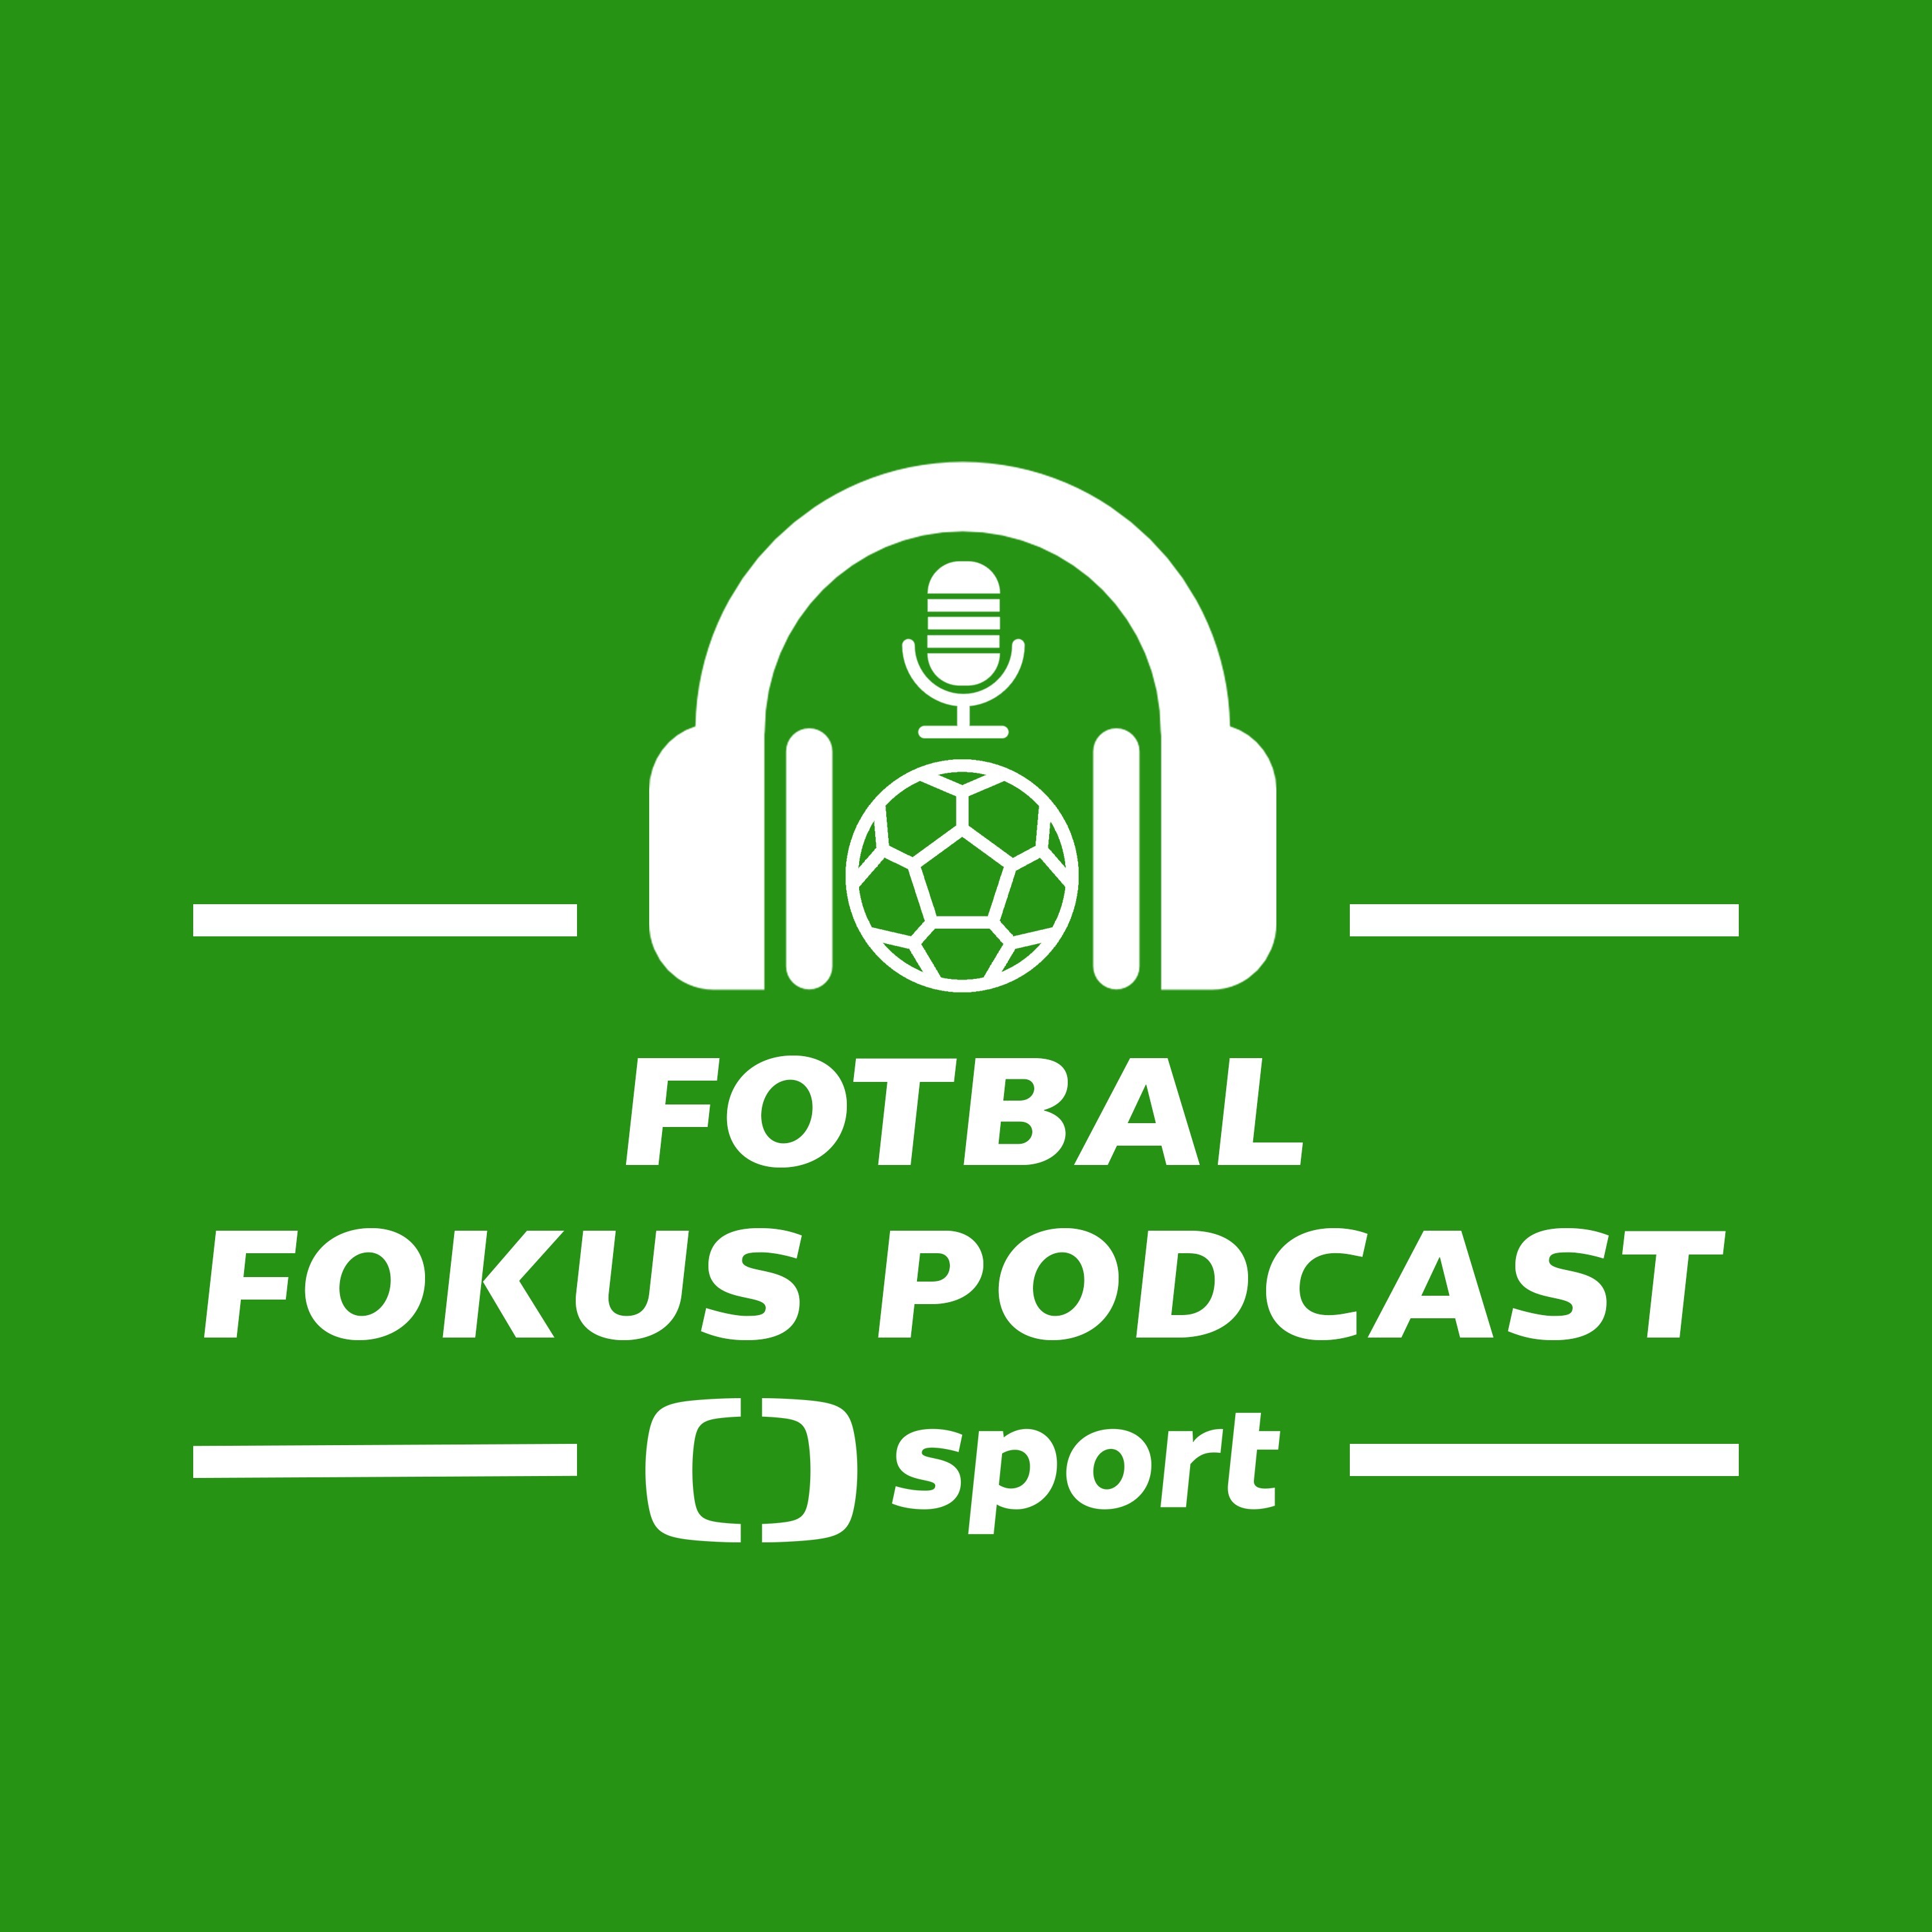 Fotbal fokus podcast: Bude spojení Souček – West Ham fungovat a kde je pravda v kauze Hašek?